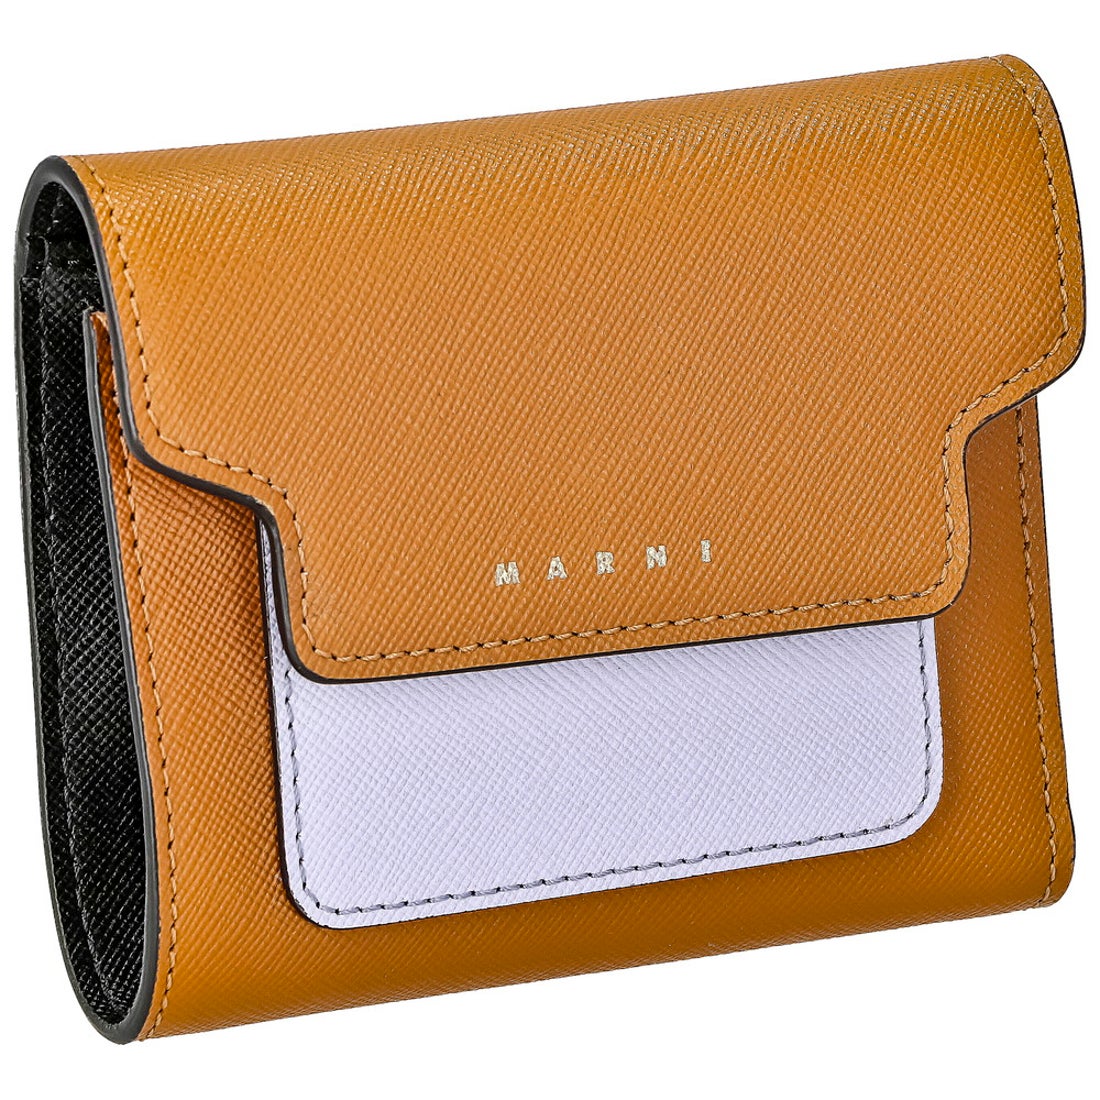 マルニ MARNI PFMO0052U1-LV520 二つ折り財布 レディース 財布 ミニ